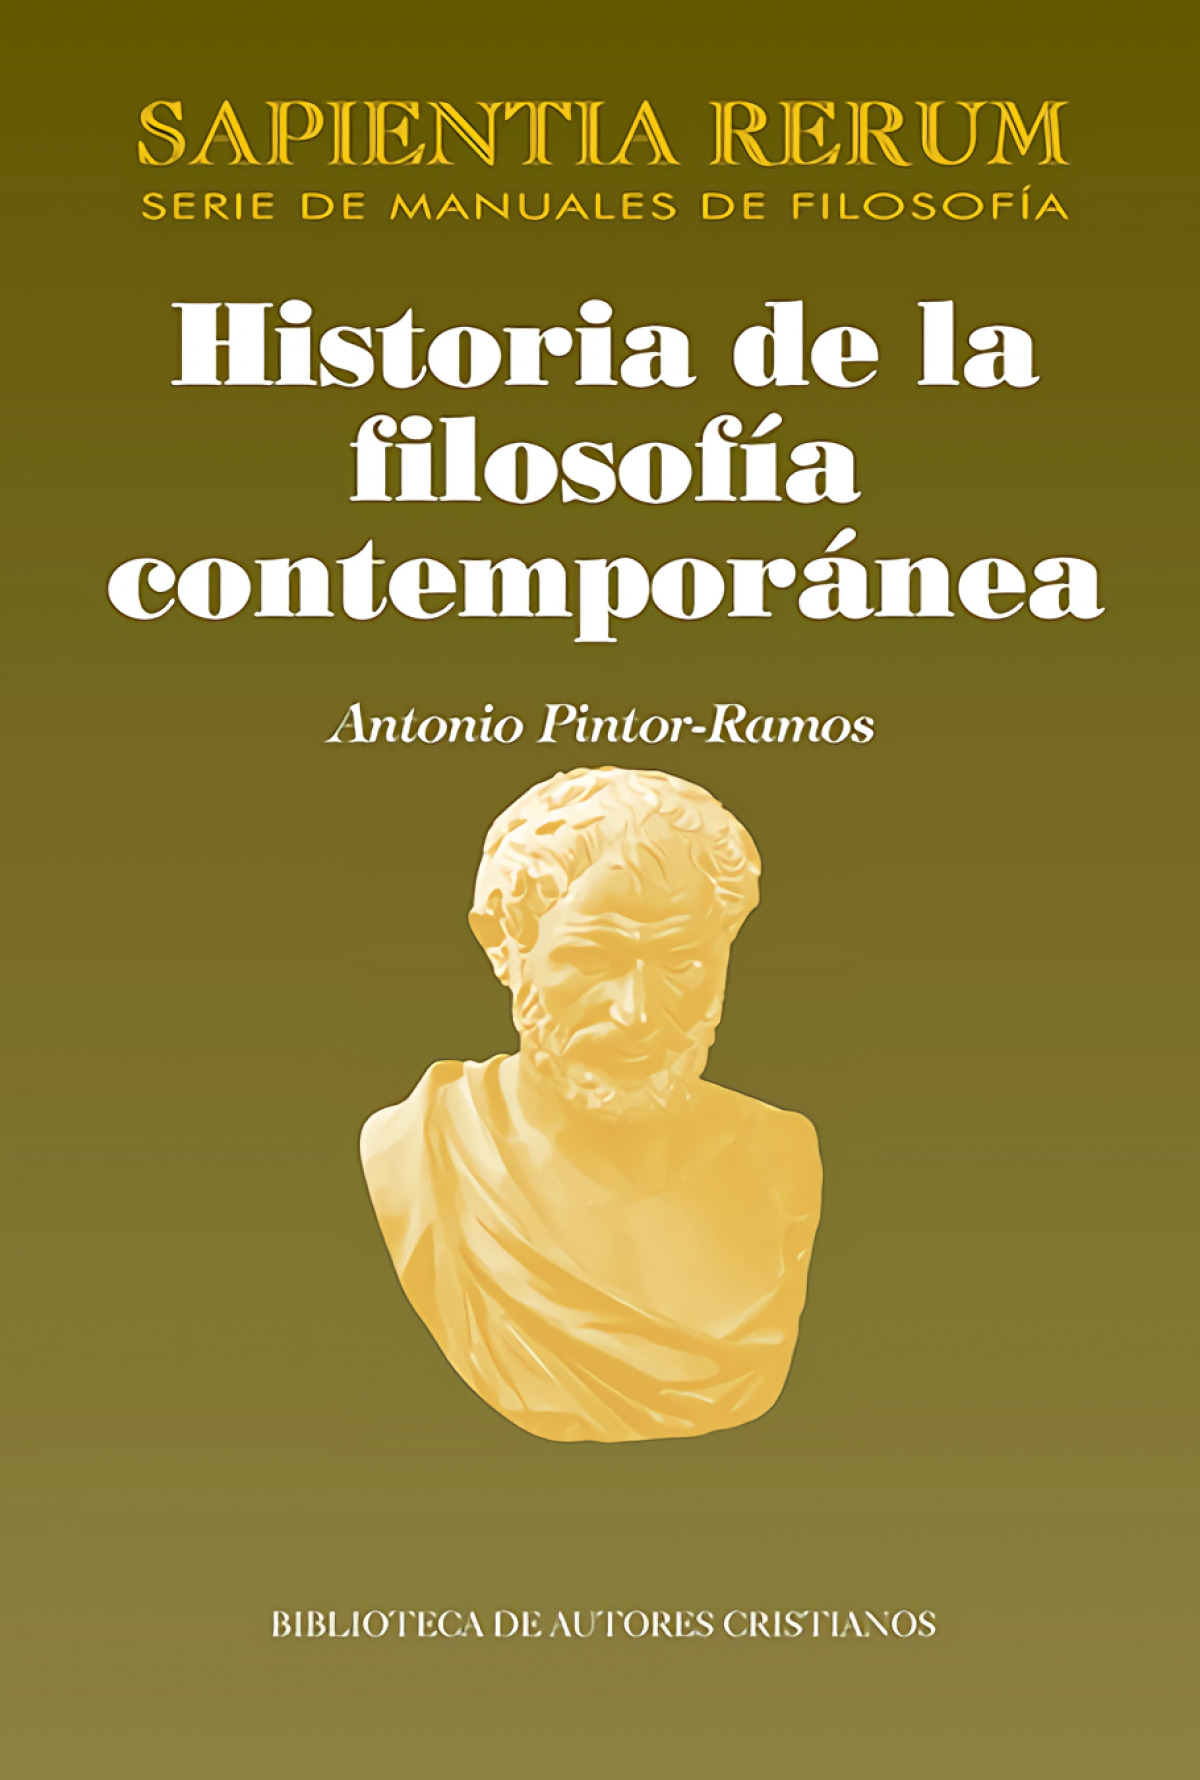 Historia filosofía contemporánea - Pintor-ramos, Antonio